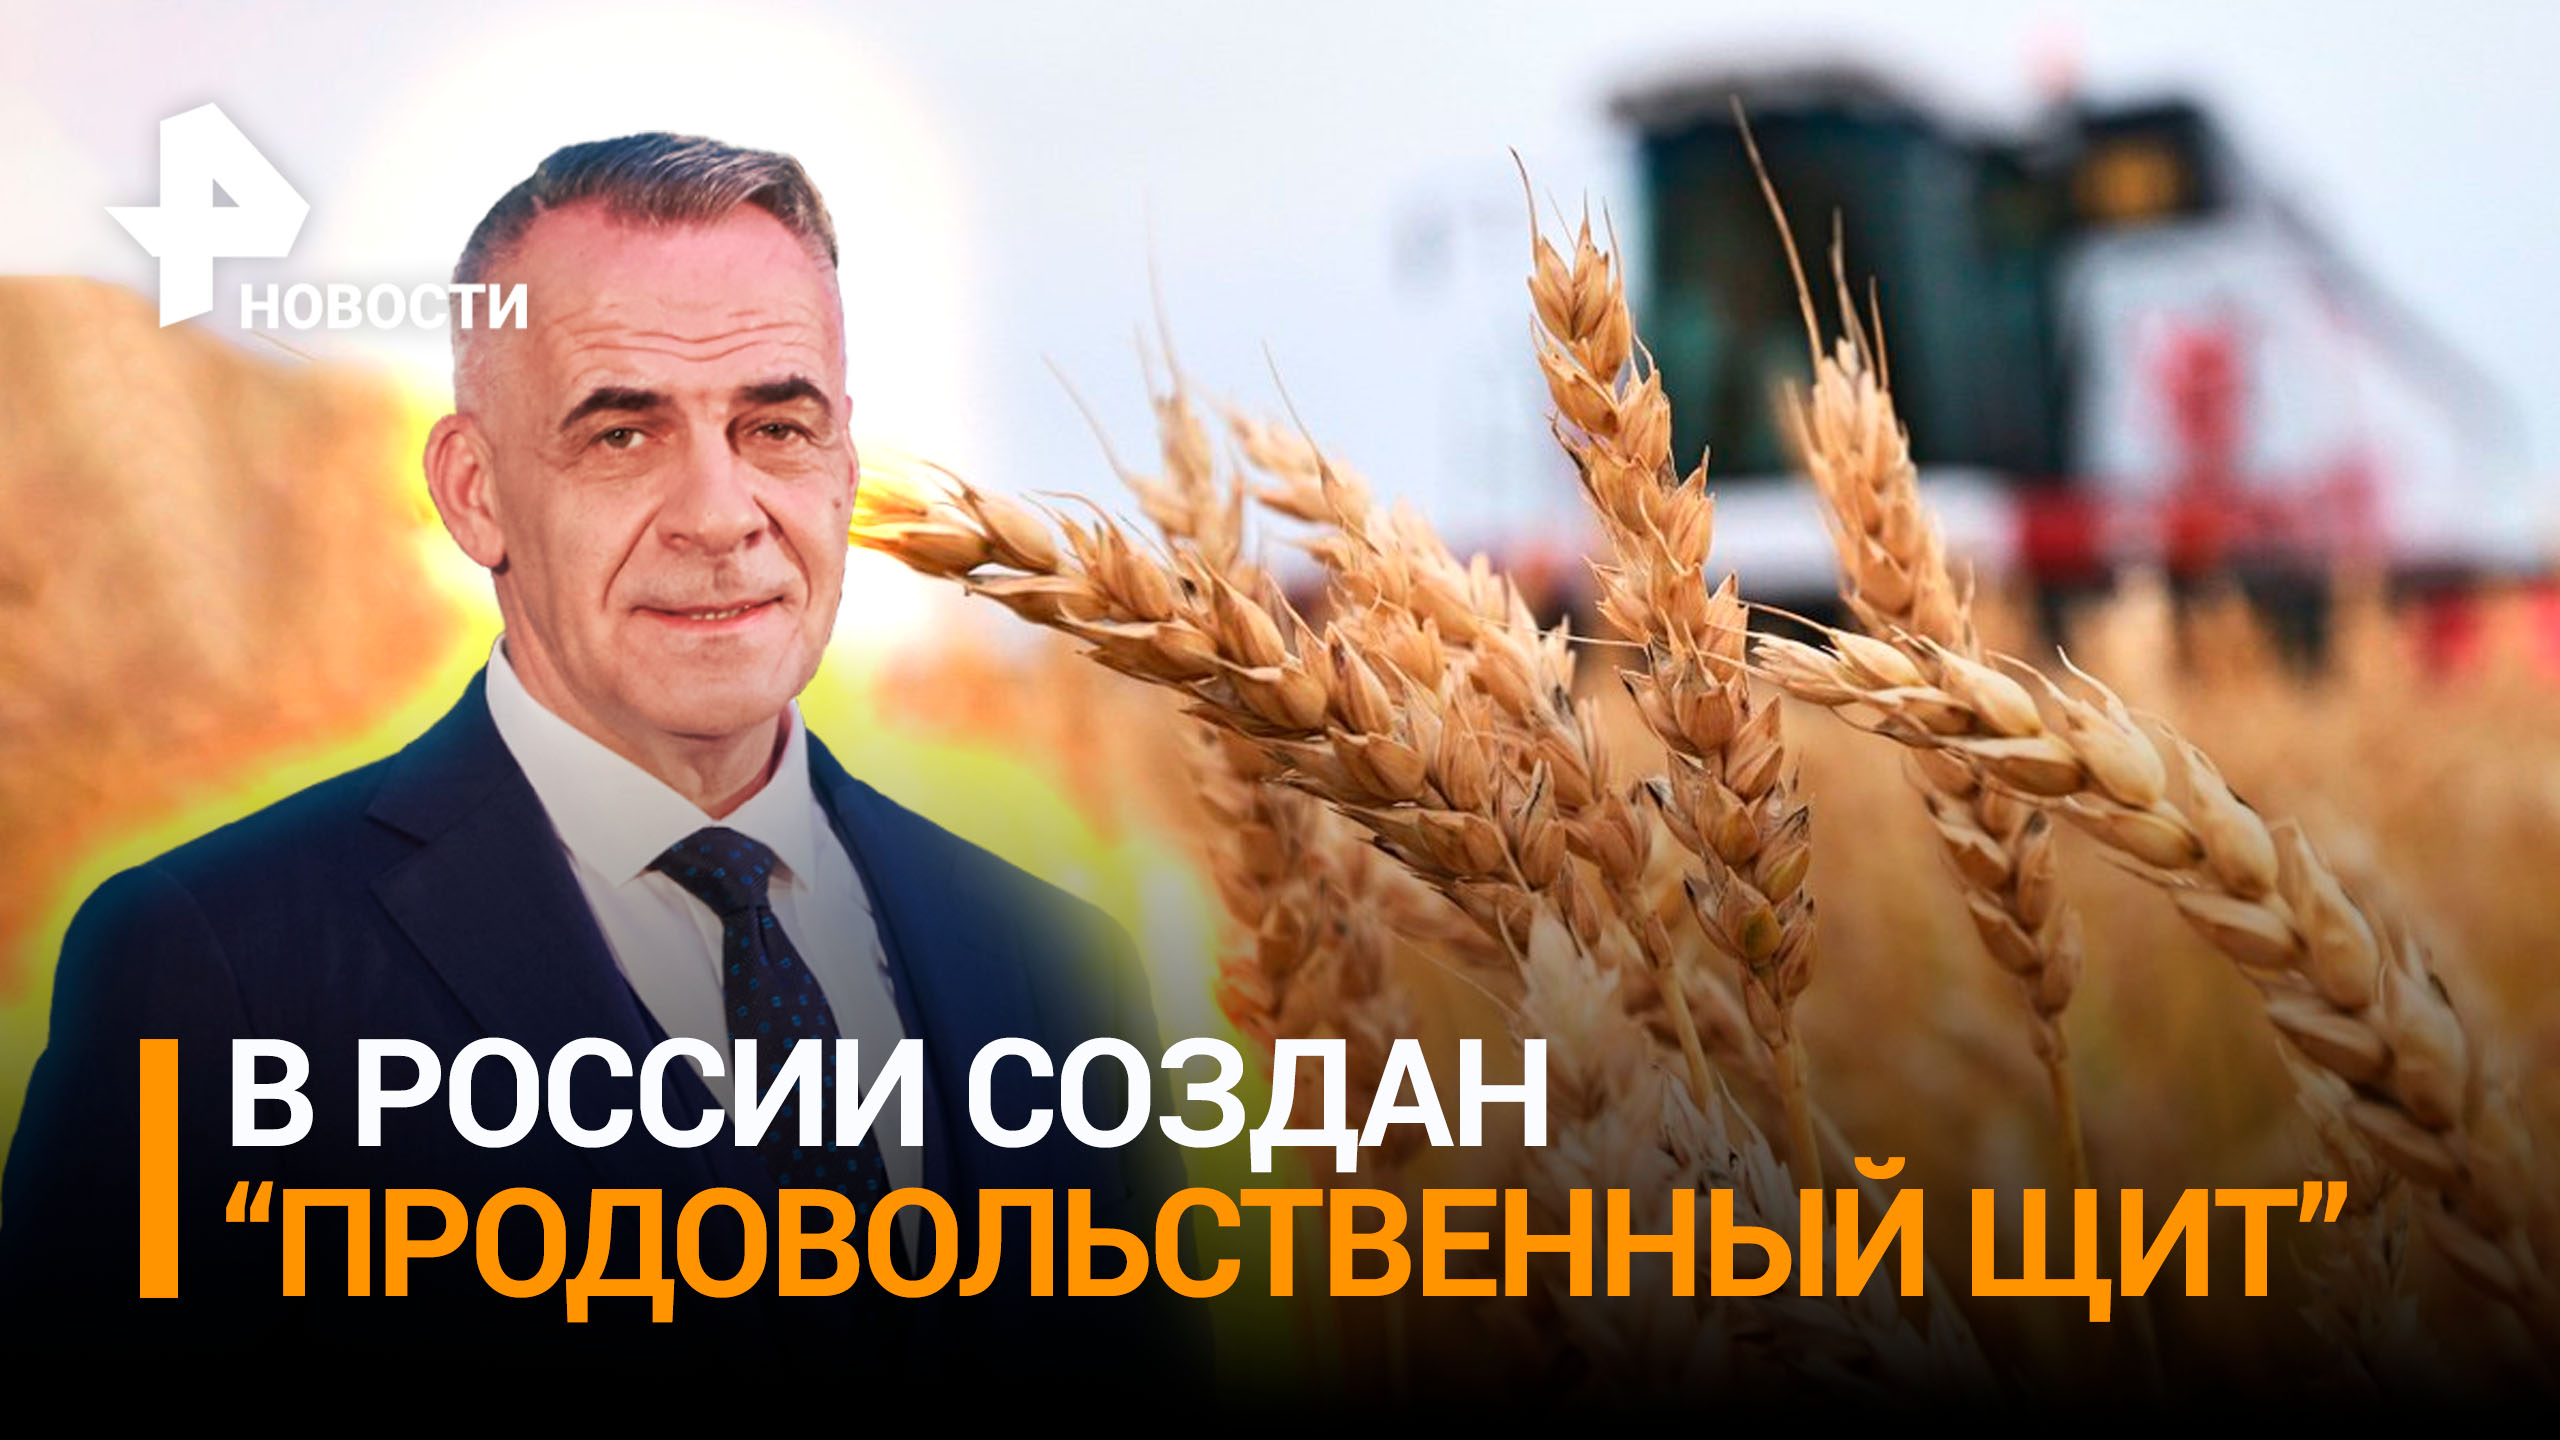 Дефицит – в прошлом: агрокомплекс создал продовольственный щит России / ИТОГИ с Петром Марченко